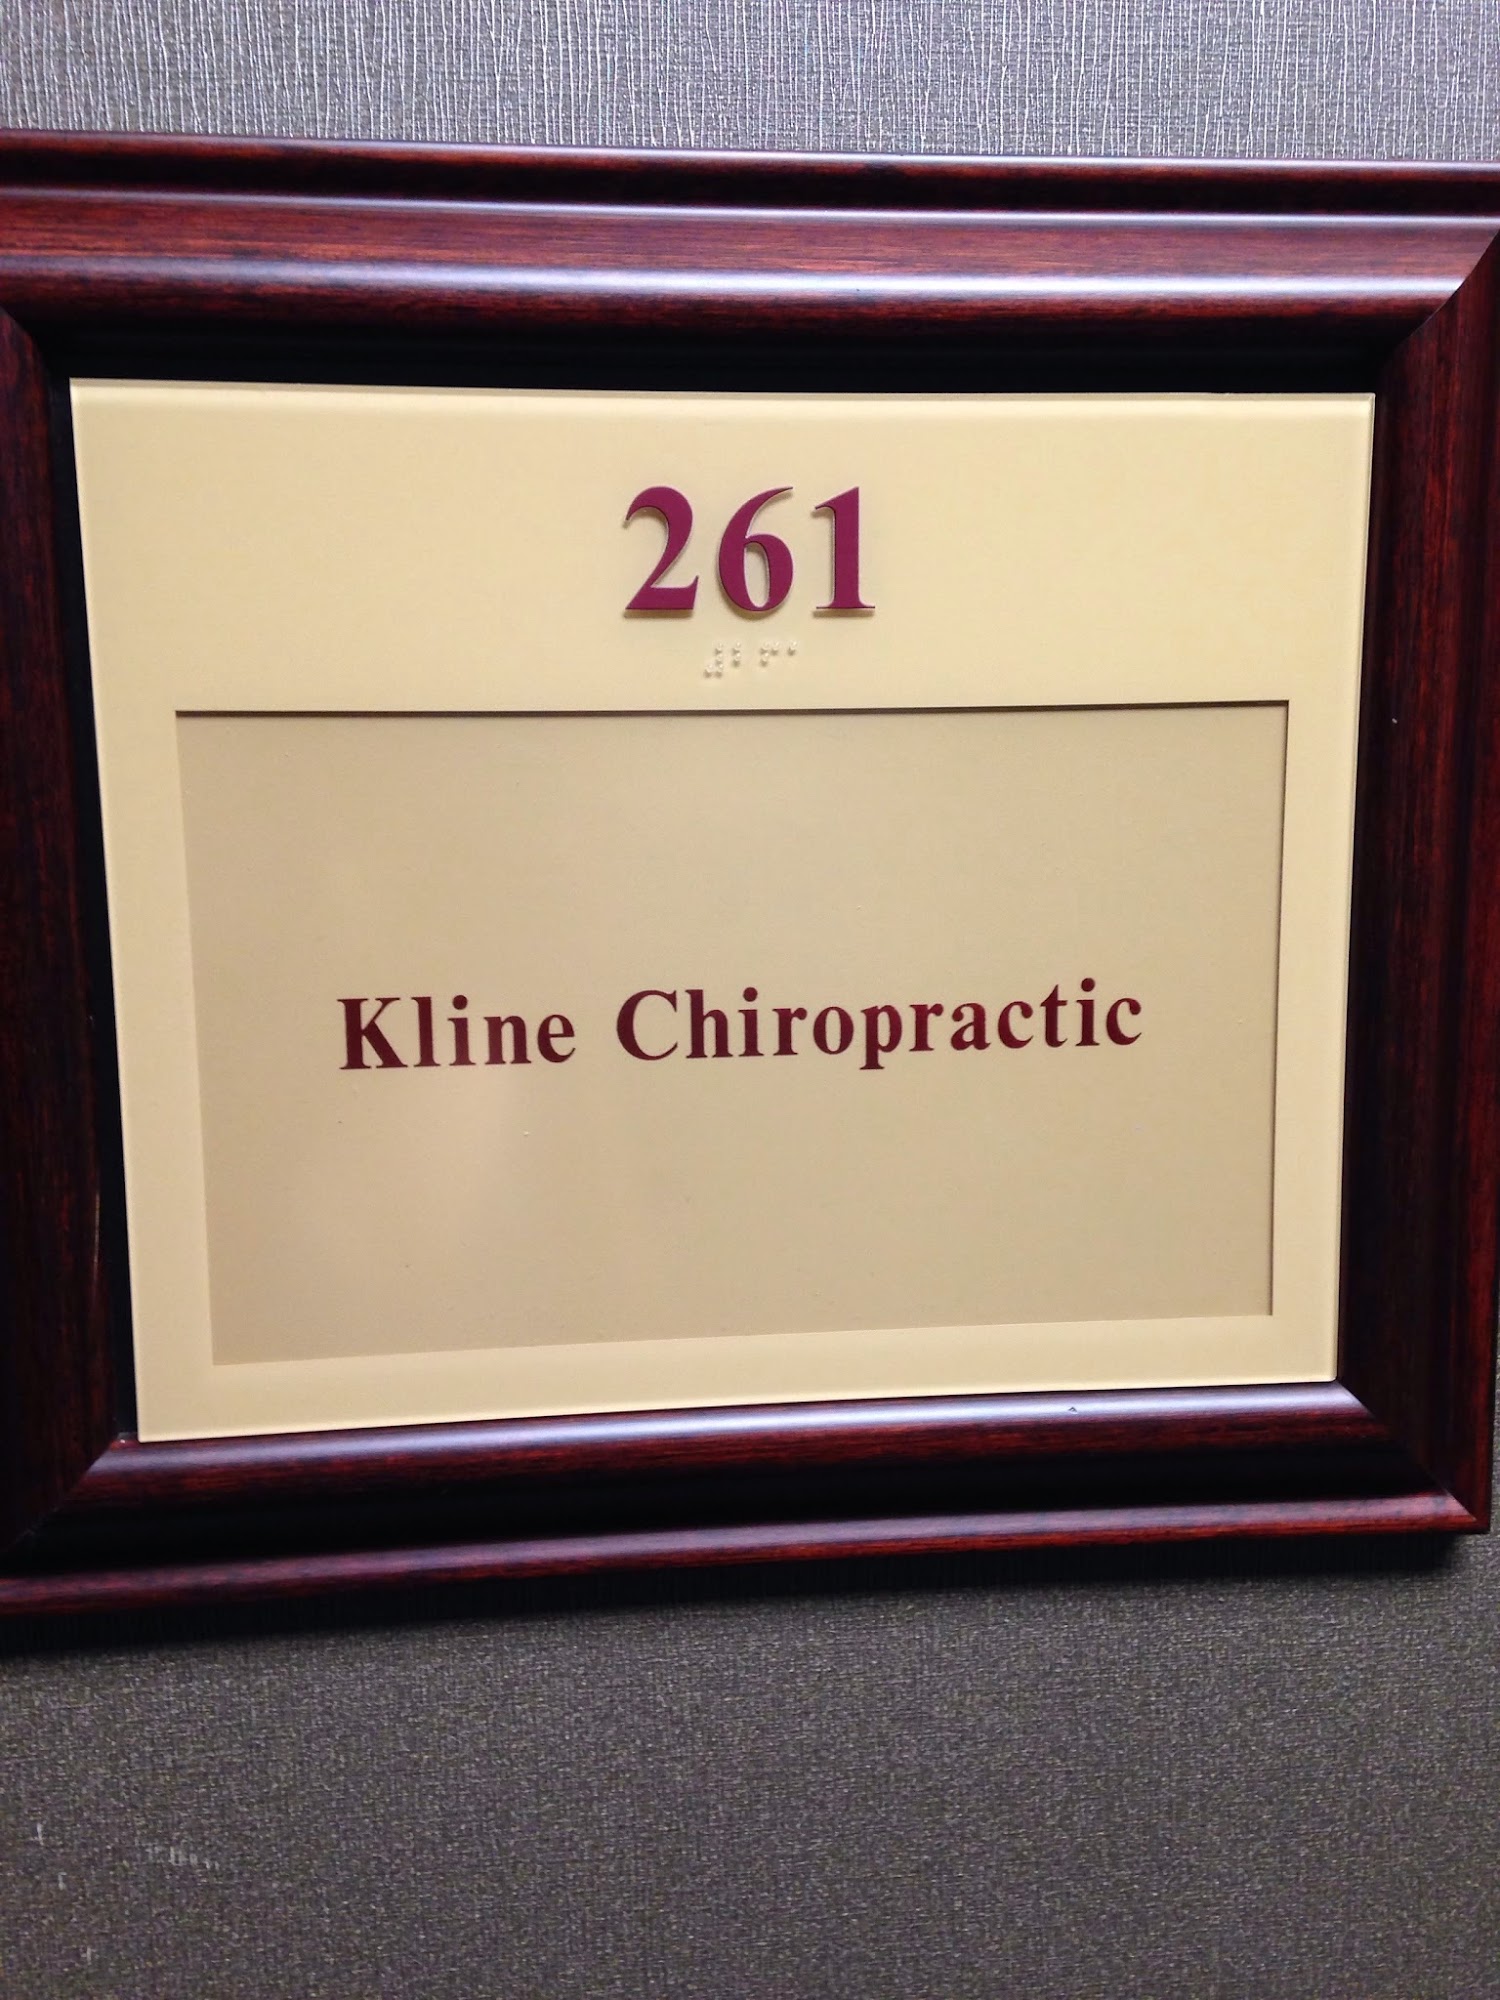 Kline Chiropractic